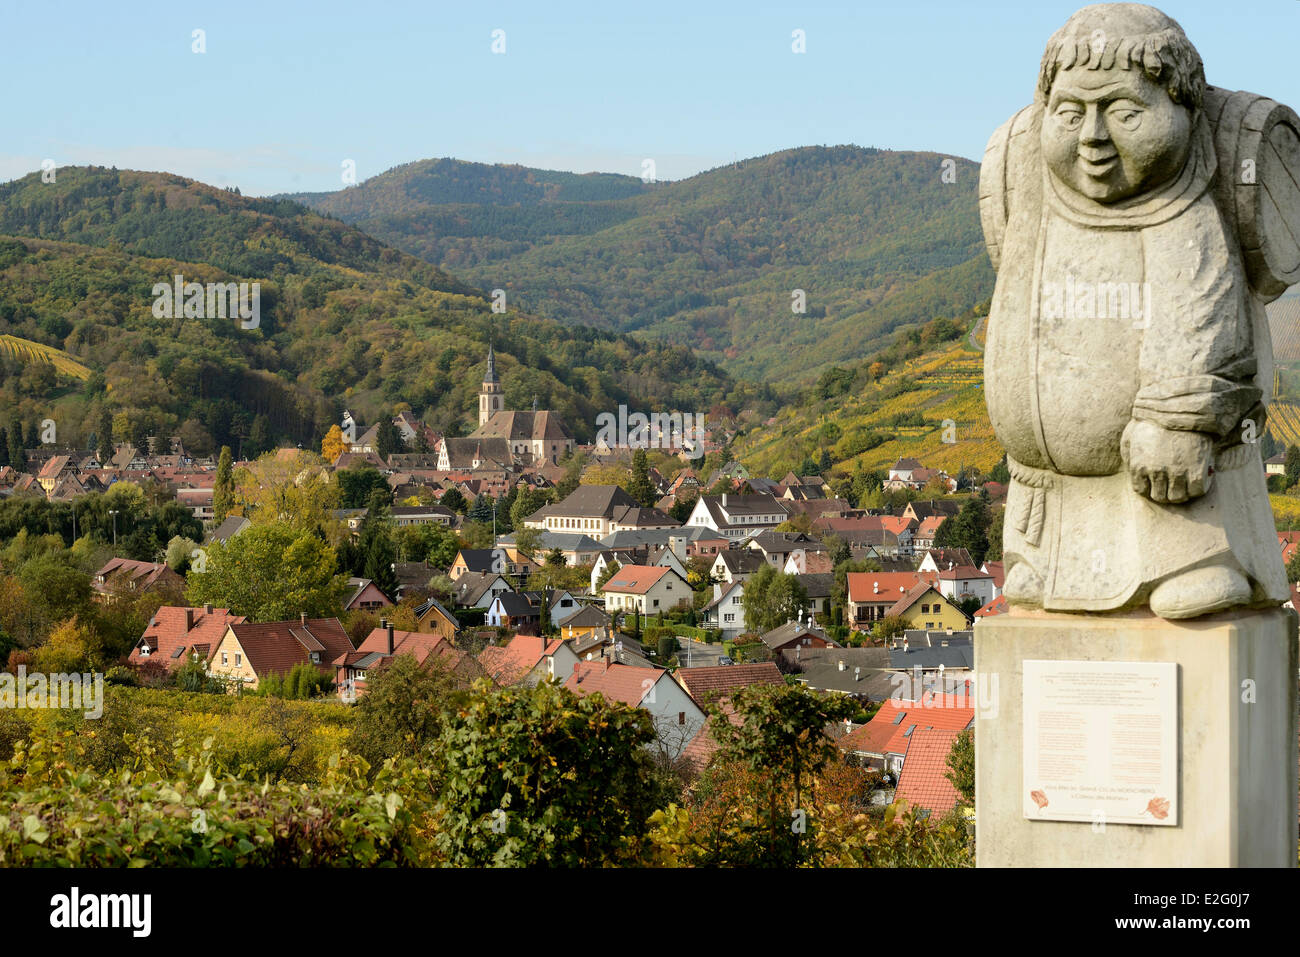 Frankreich Bas Rhin Elsass Wein Route Andlau Abtei Weingarten Grand Cru Moenschberg dem Hügel der Mönche Statue der Mönch Winzer Stockfoto